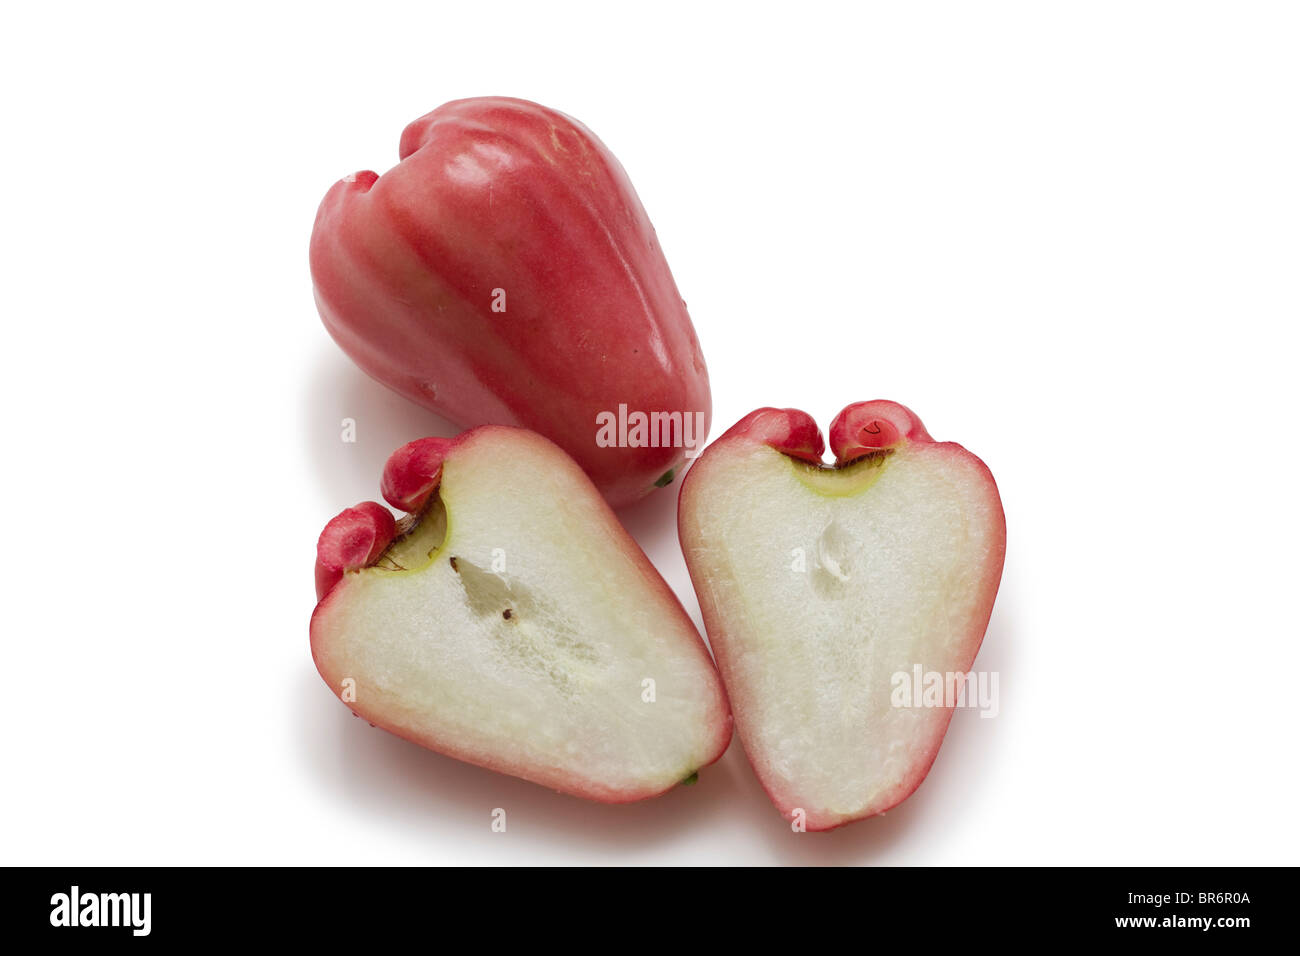 Wachs Apfel, Syzygium Samarangense, leckere exotische Südfrüchte Stockfoto